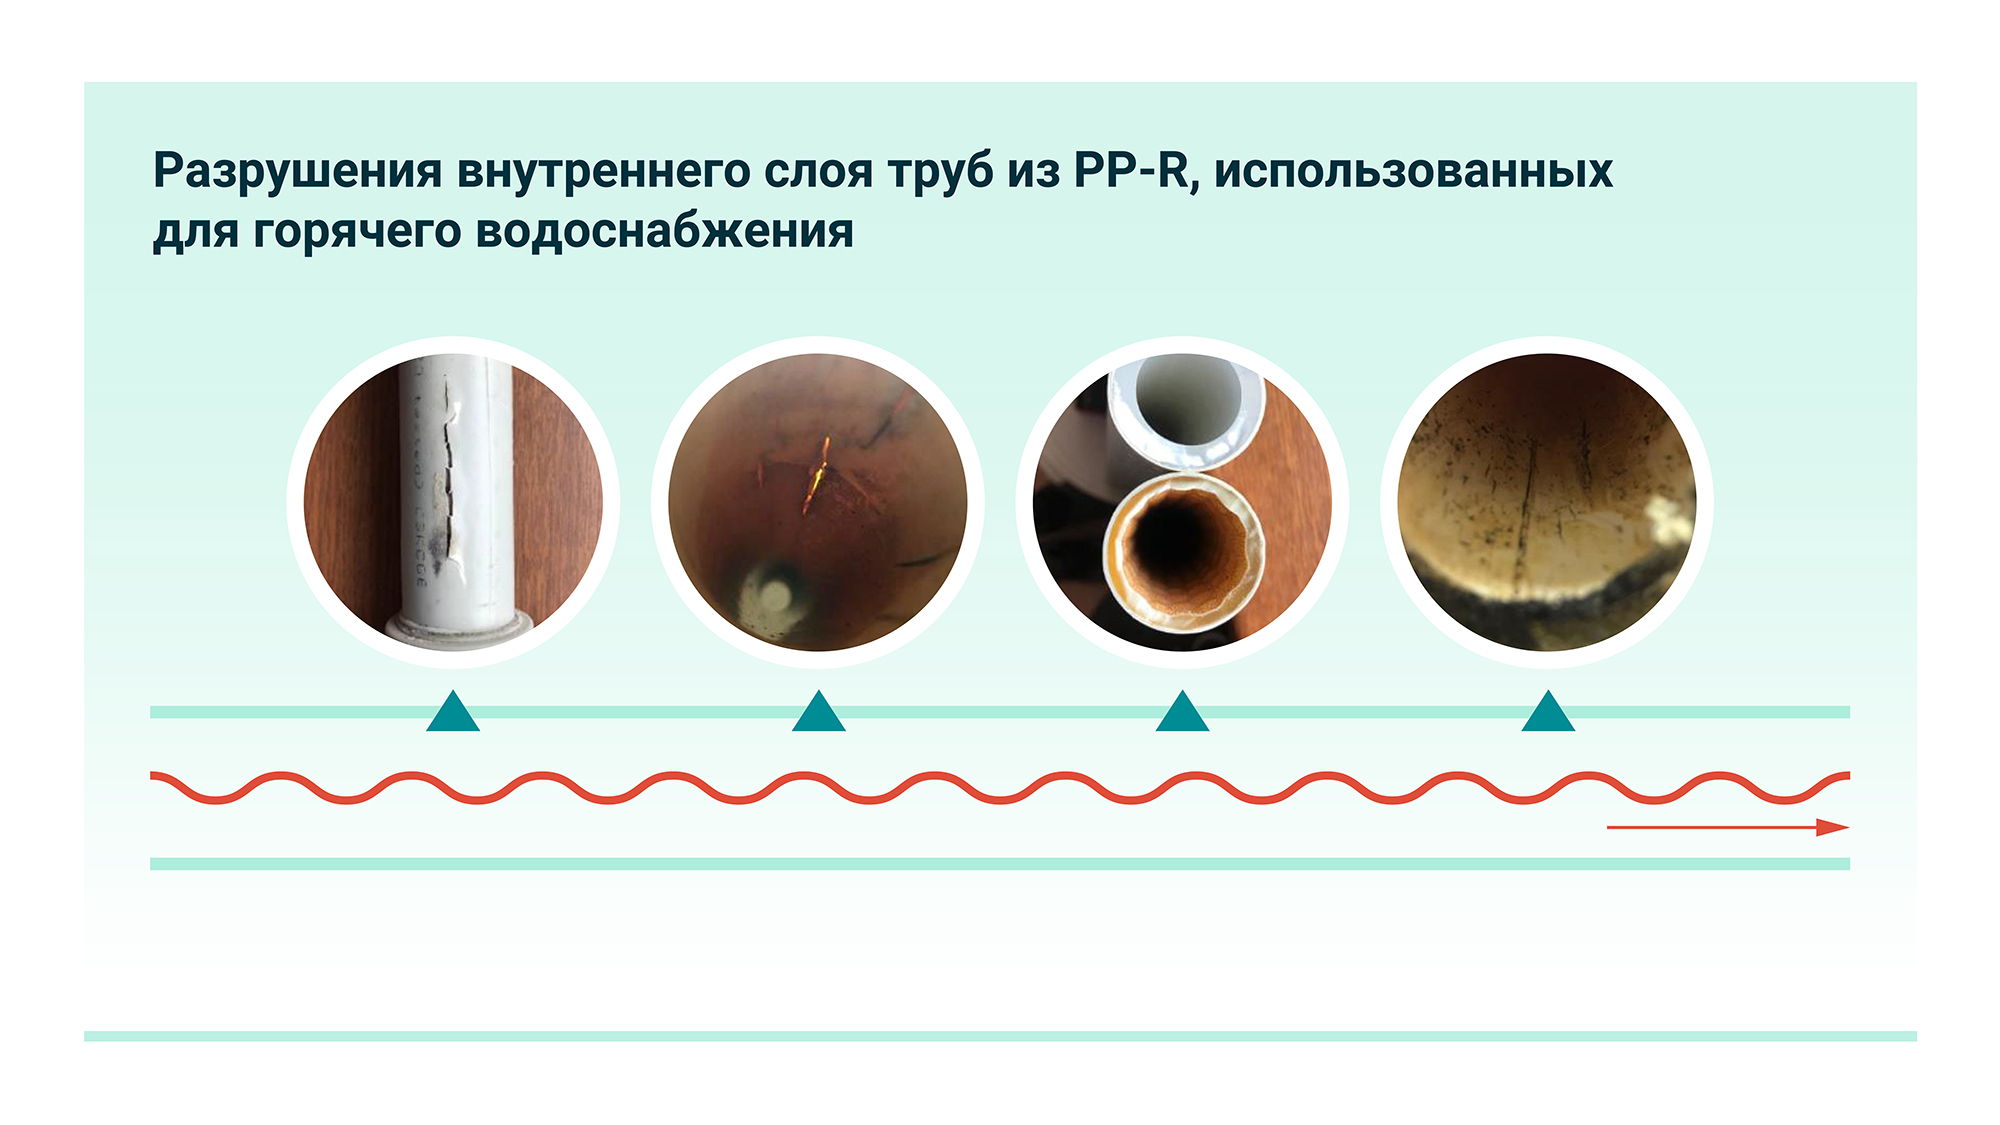 Примеры разрушения внутреннего слоя труб из PP-R, использованных для горячего водоснабжения. 